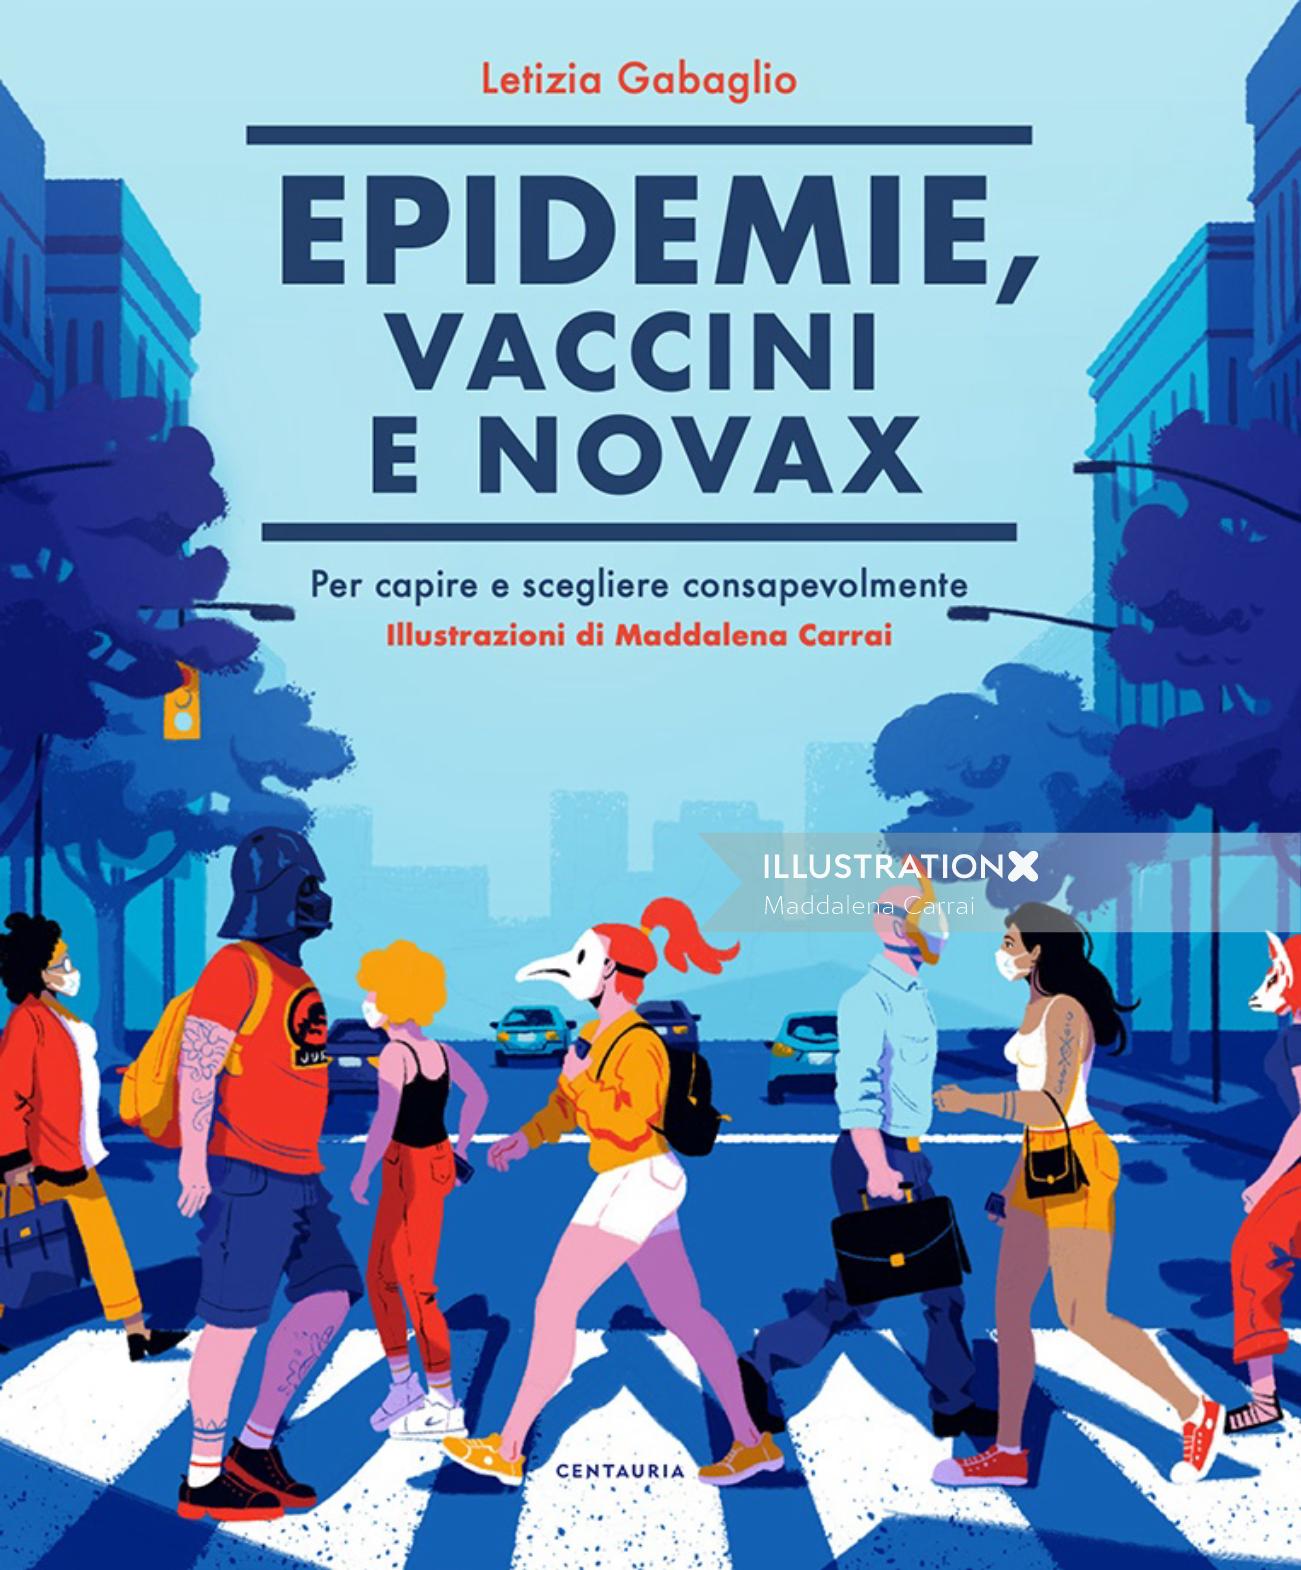 著書「Epidemie, vaccini e no vax」の表紙